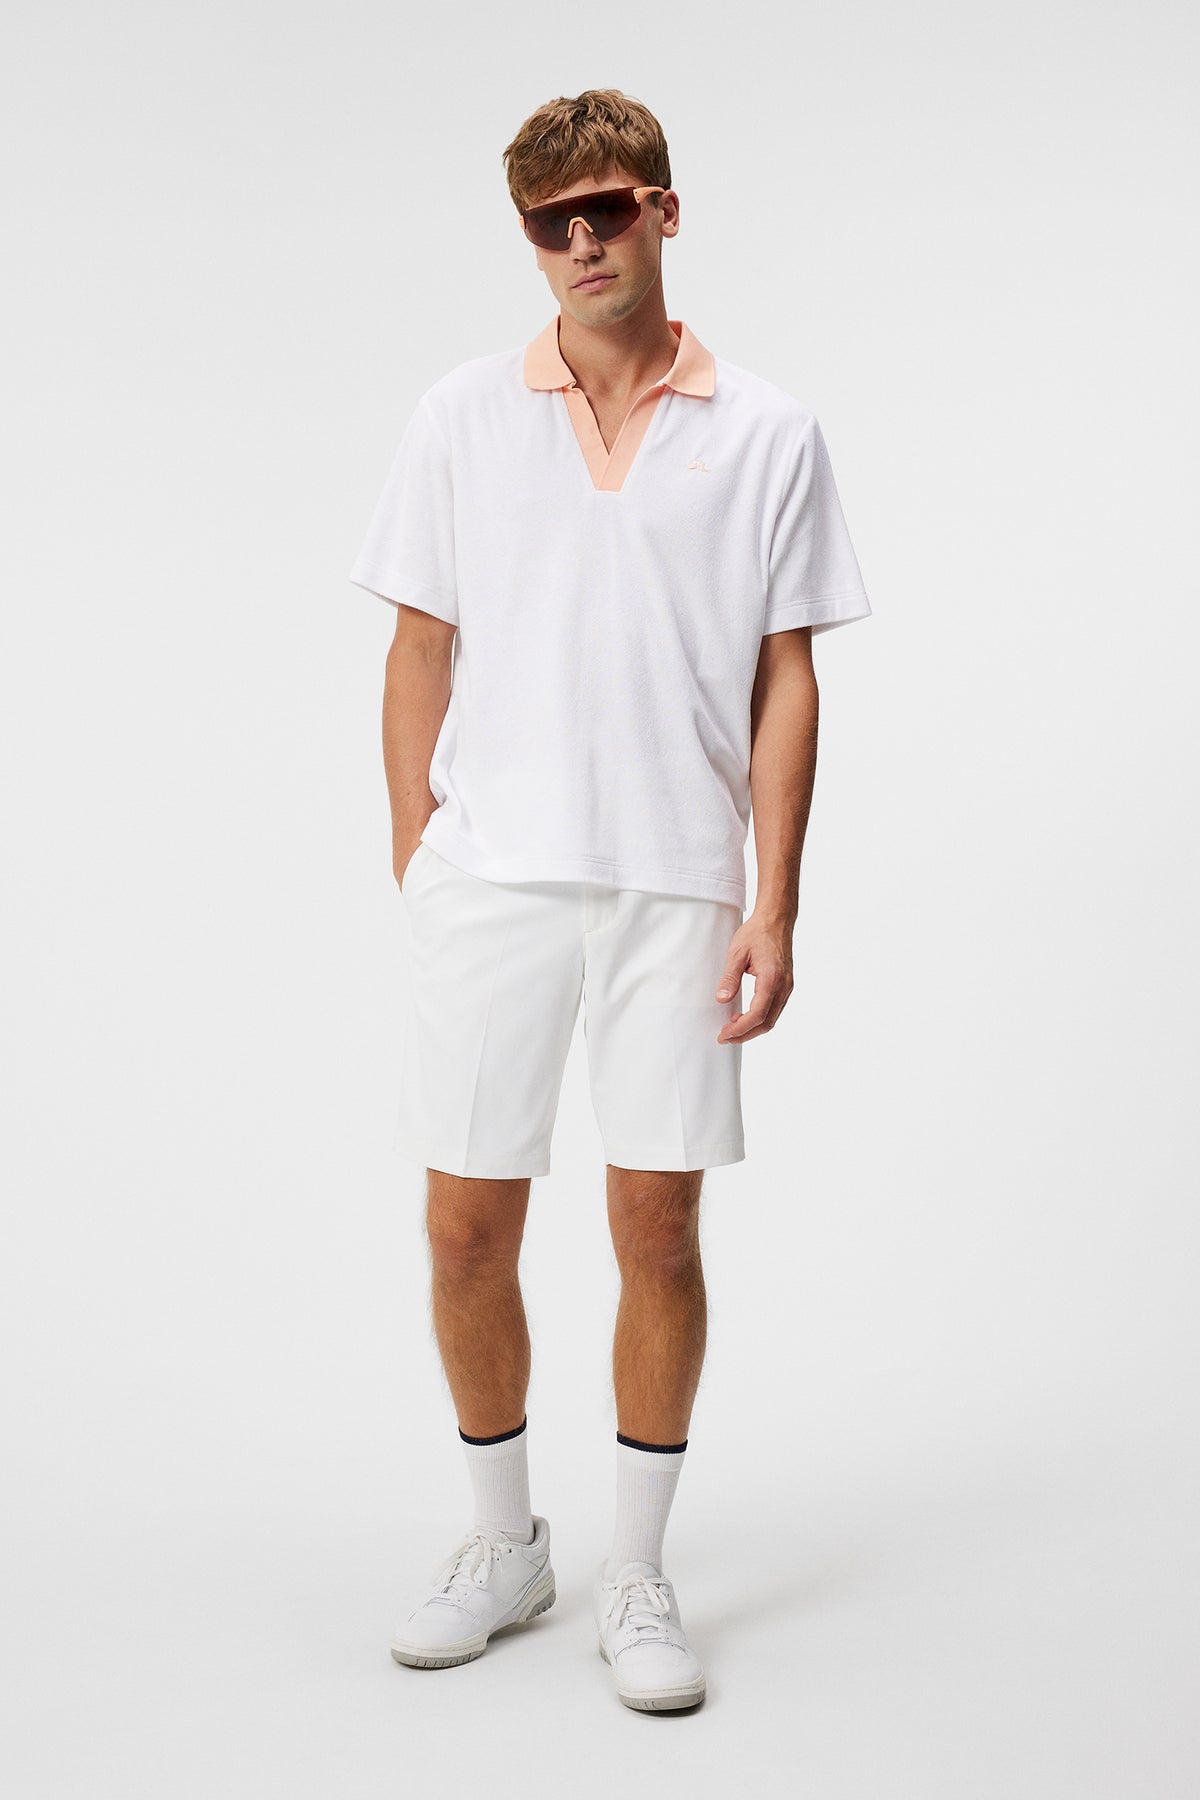 Gavin Terry Polo Shirt / White